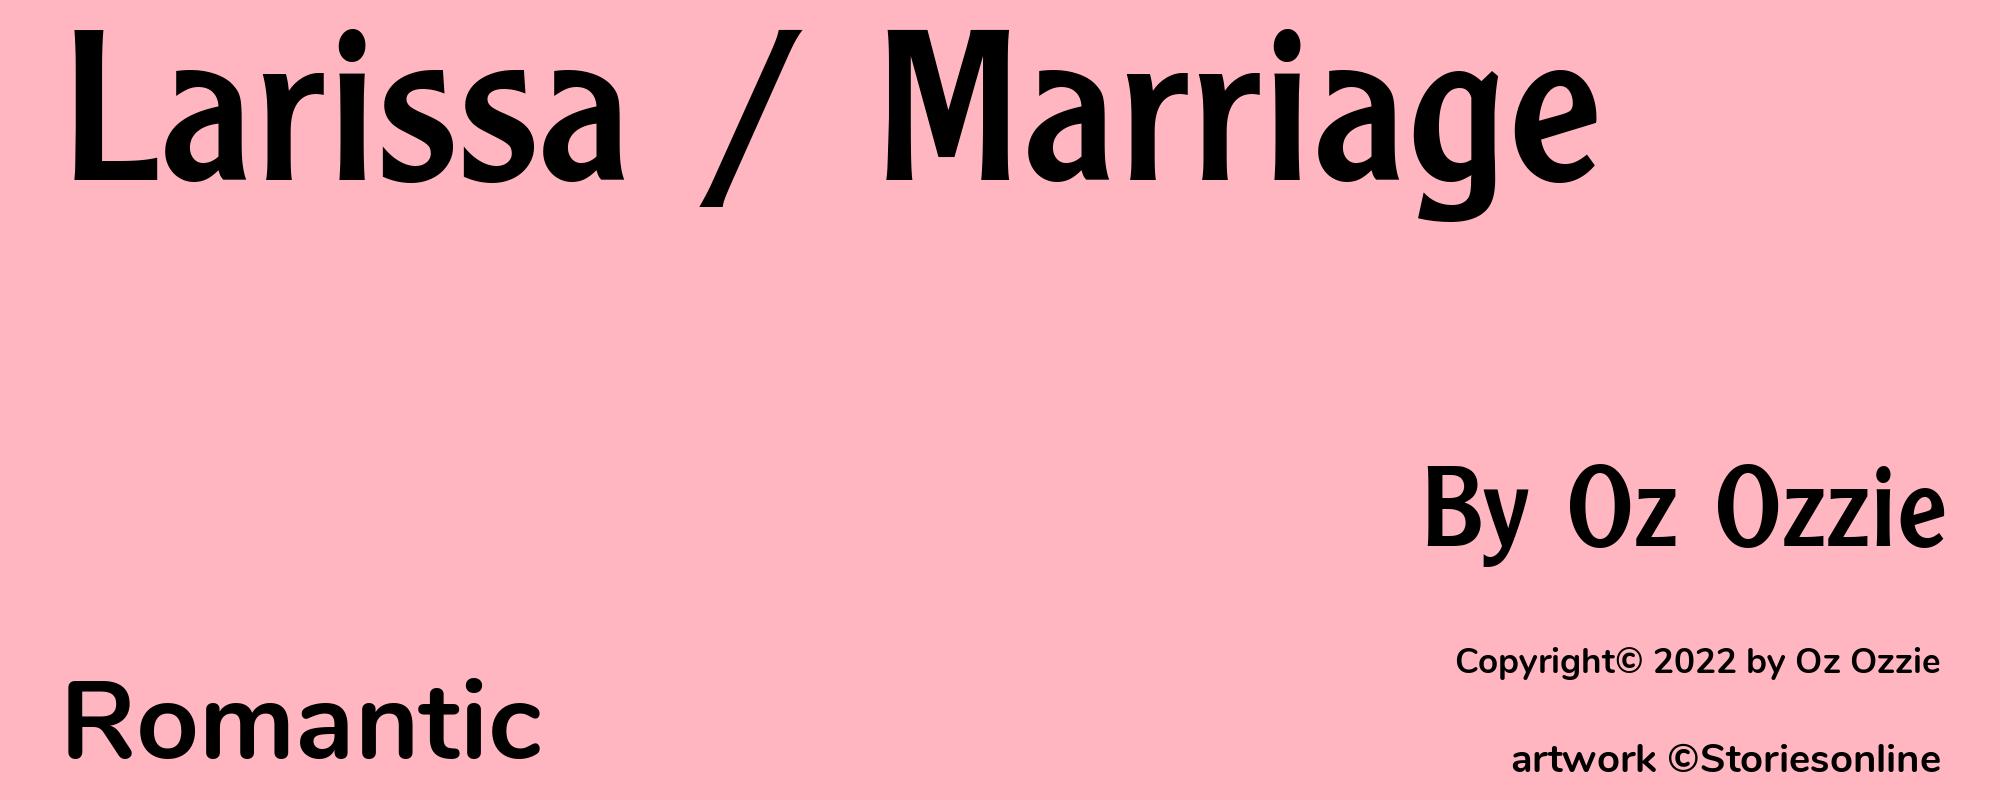 Larissa / Marriage - Cover